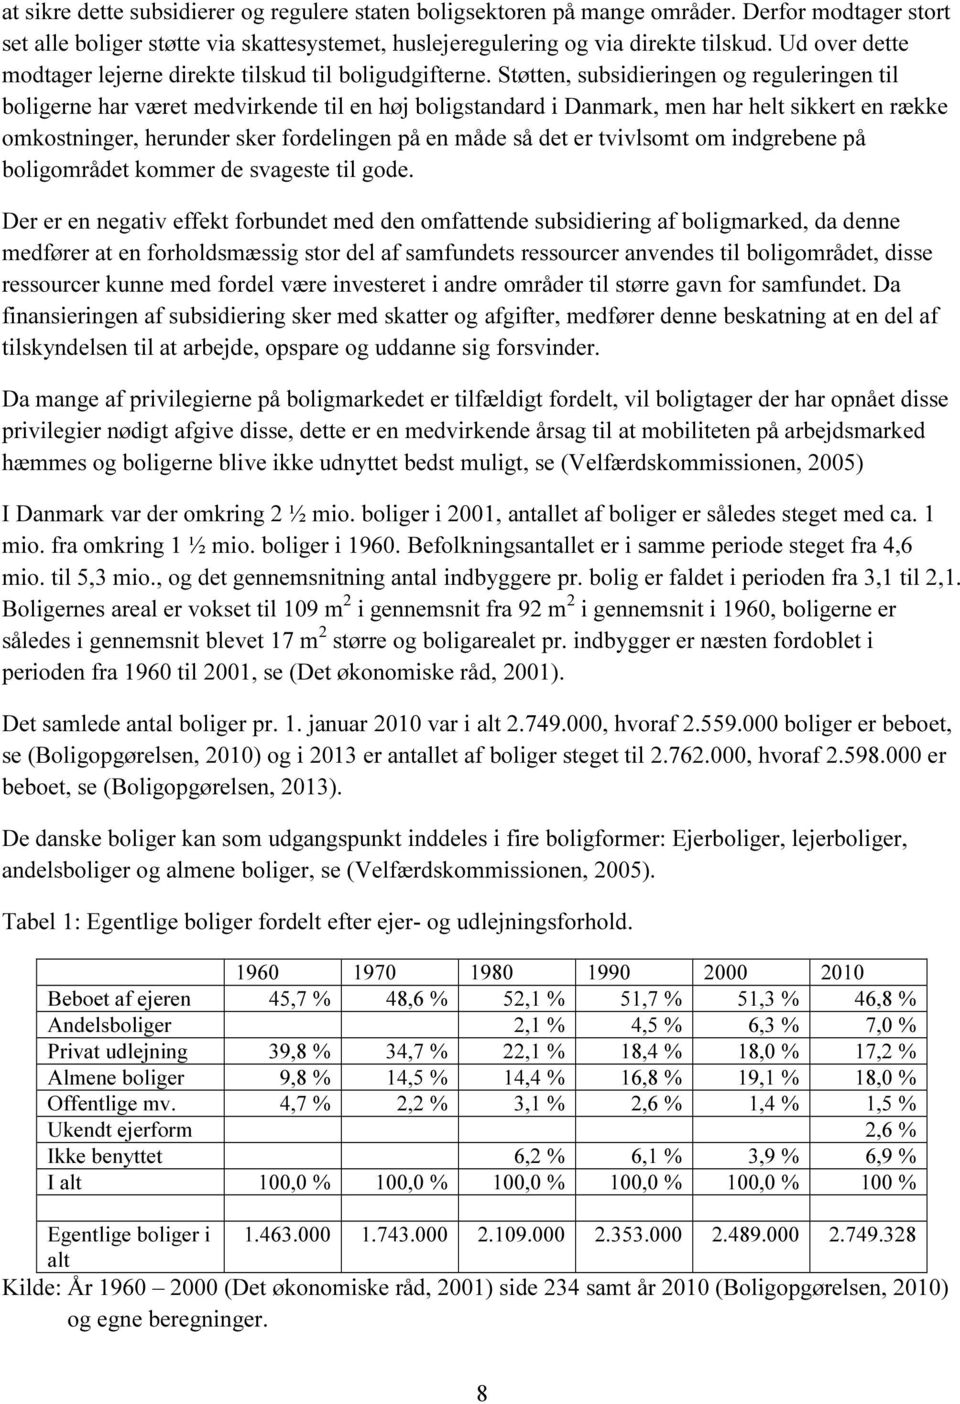 Støtten, subsidieringen og reguleringen til boligerne har været medvirkende til en høj boligstandard i Danmark, men har helt sikkert en række omkostninger, herunder sker fordelingen på en måde så det